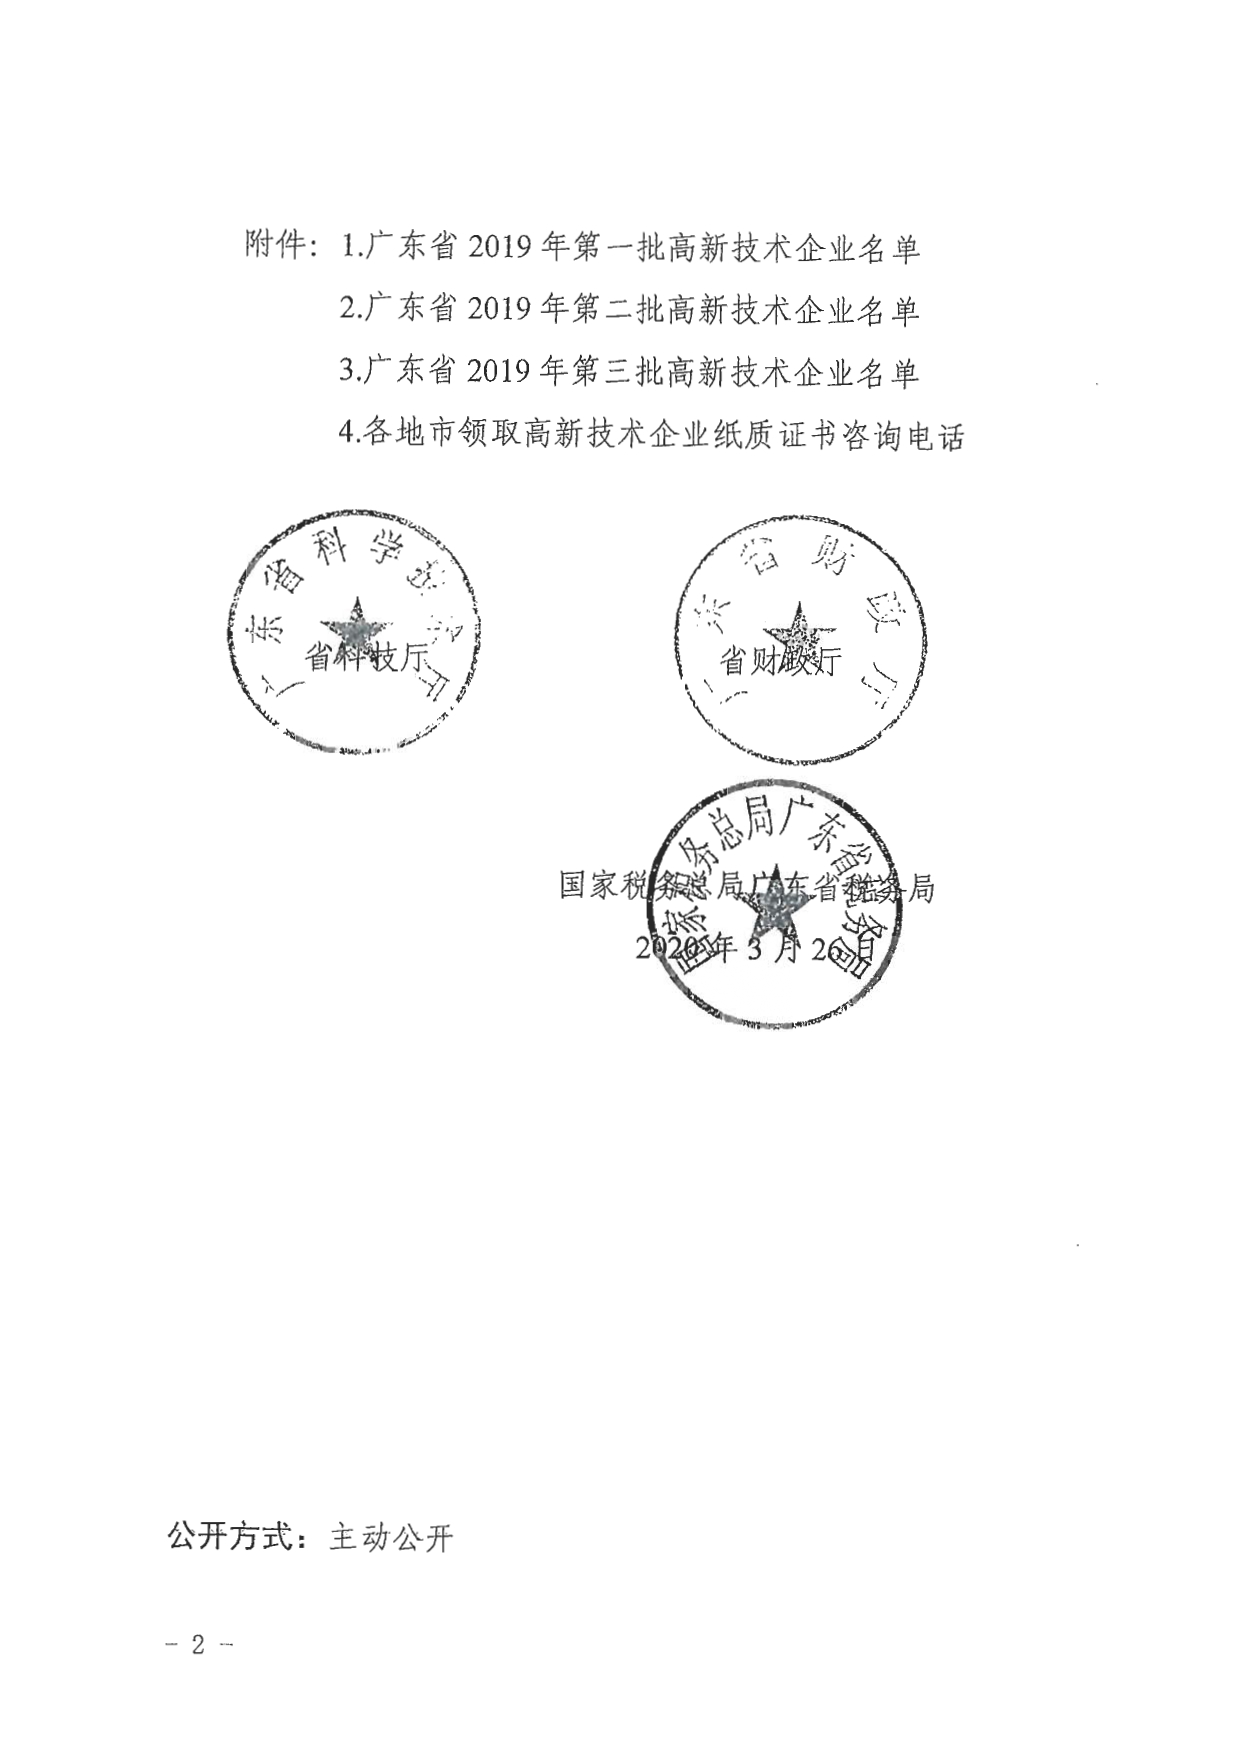 关于公布广东省2019年高新技术企业名单的通知_page-0004.jpg